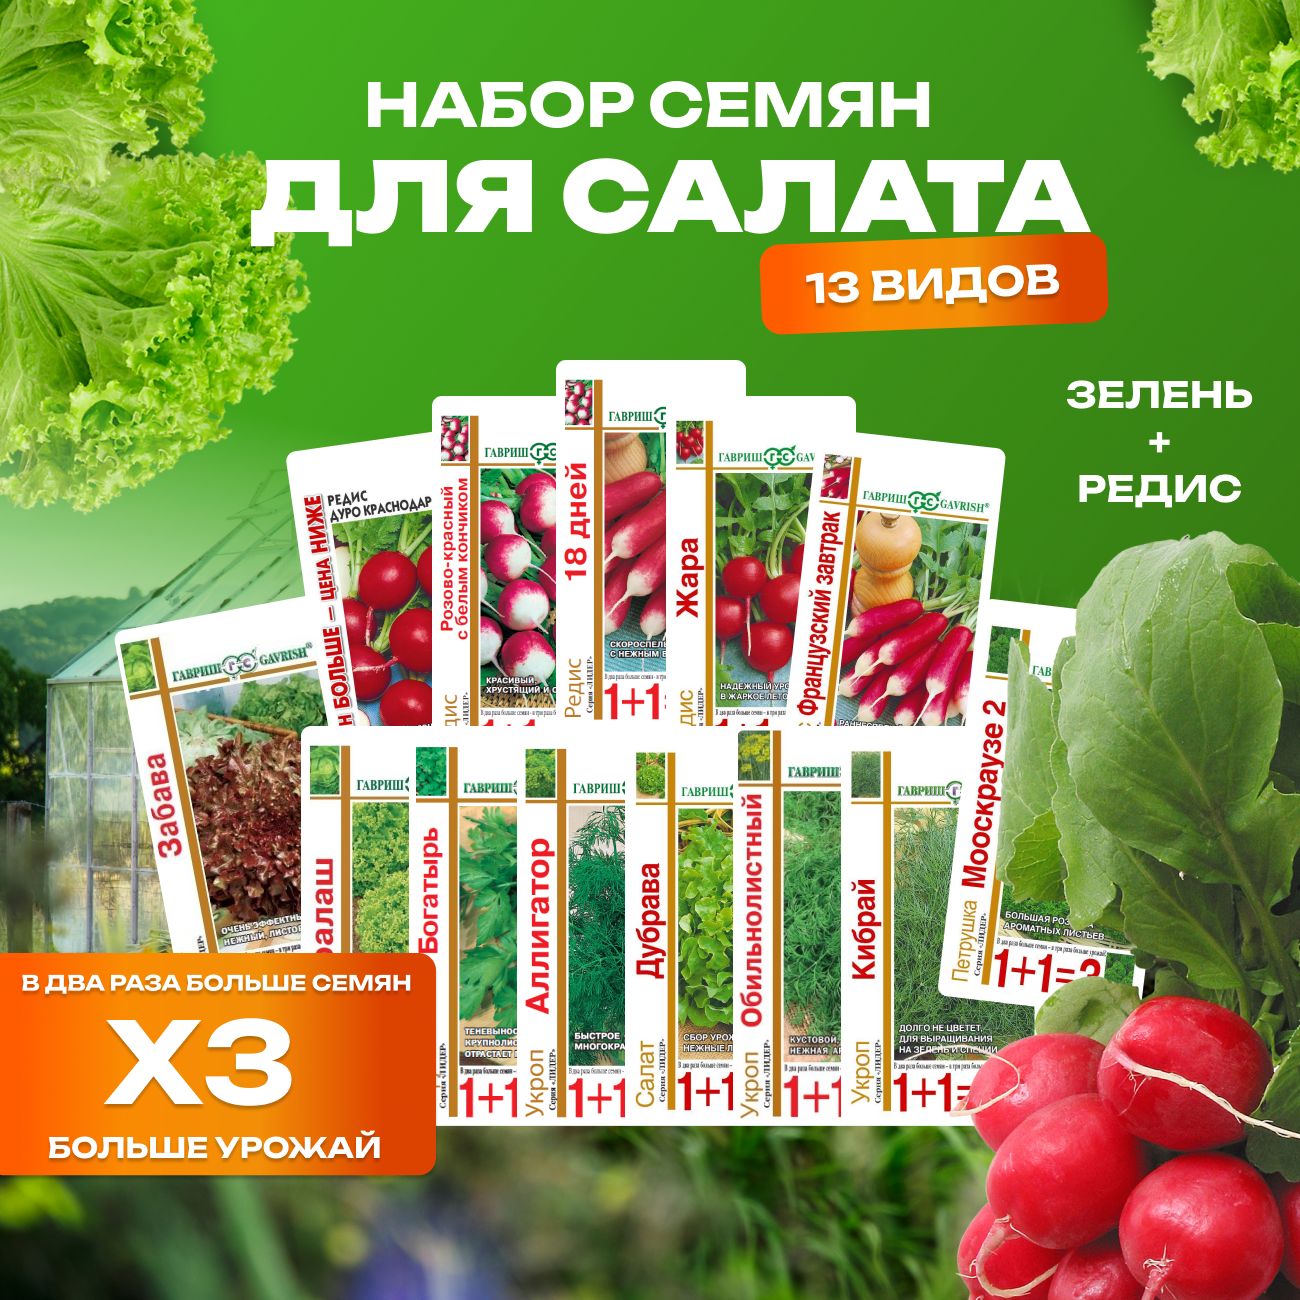 Семена для салата 13 видов редис, петрушка, укроп, салат, фирмы Гавриш,110153522394, 13 шт